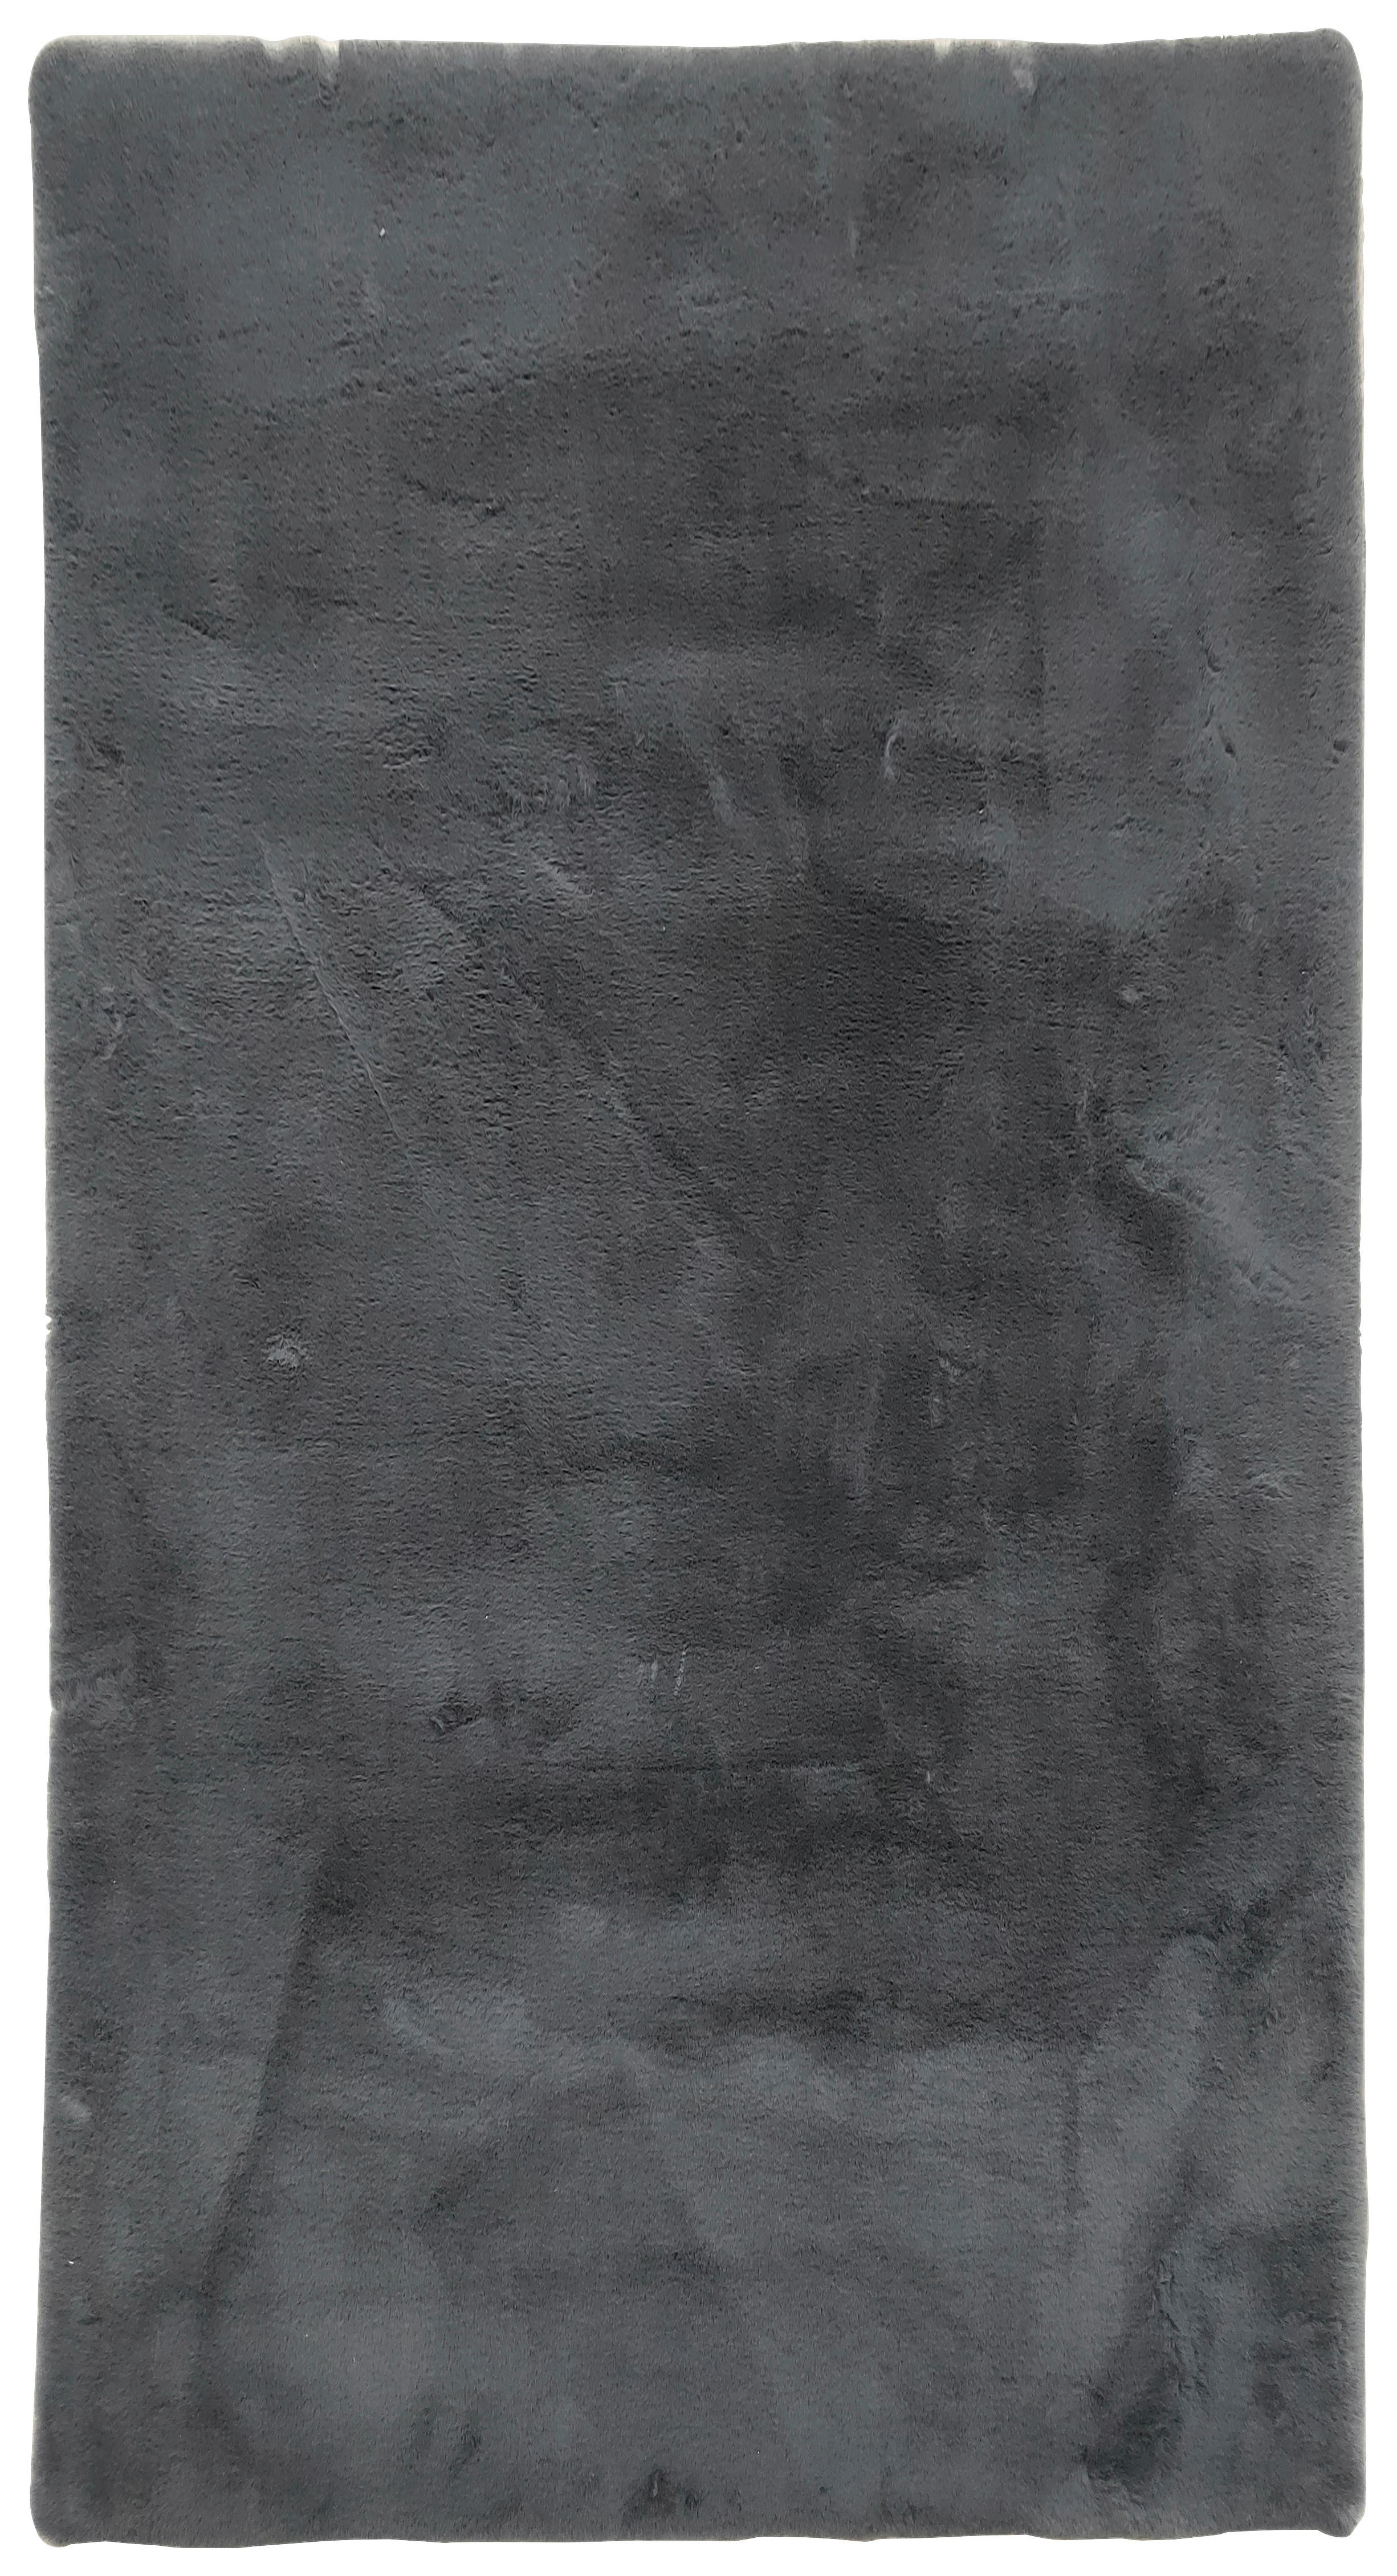 Kunstfell Caroline 1 in Anthrazit ca.80x150cm - Anthrazit, Textil (80/150cm) - Modern Living